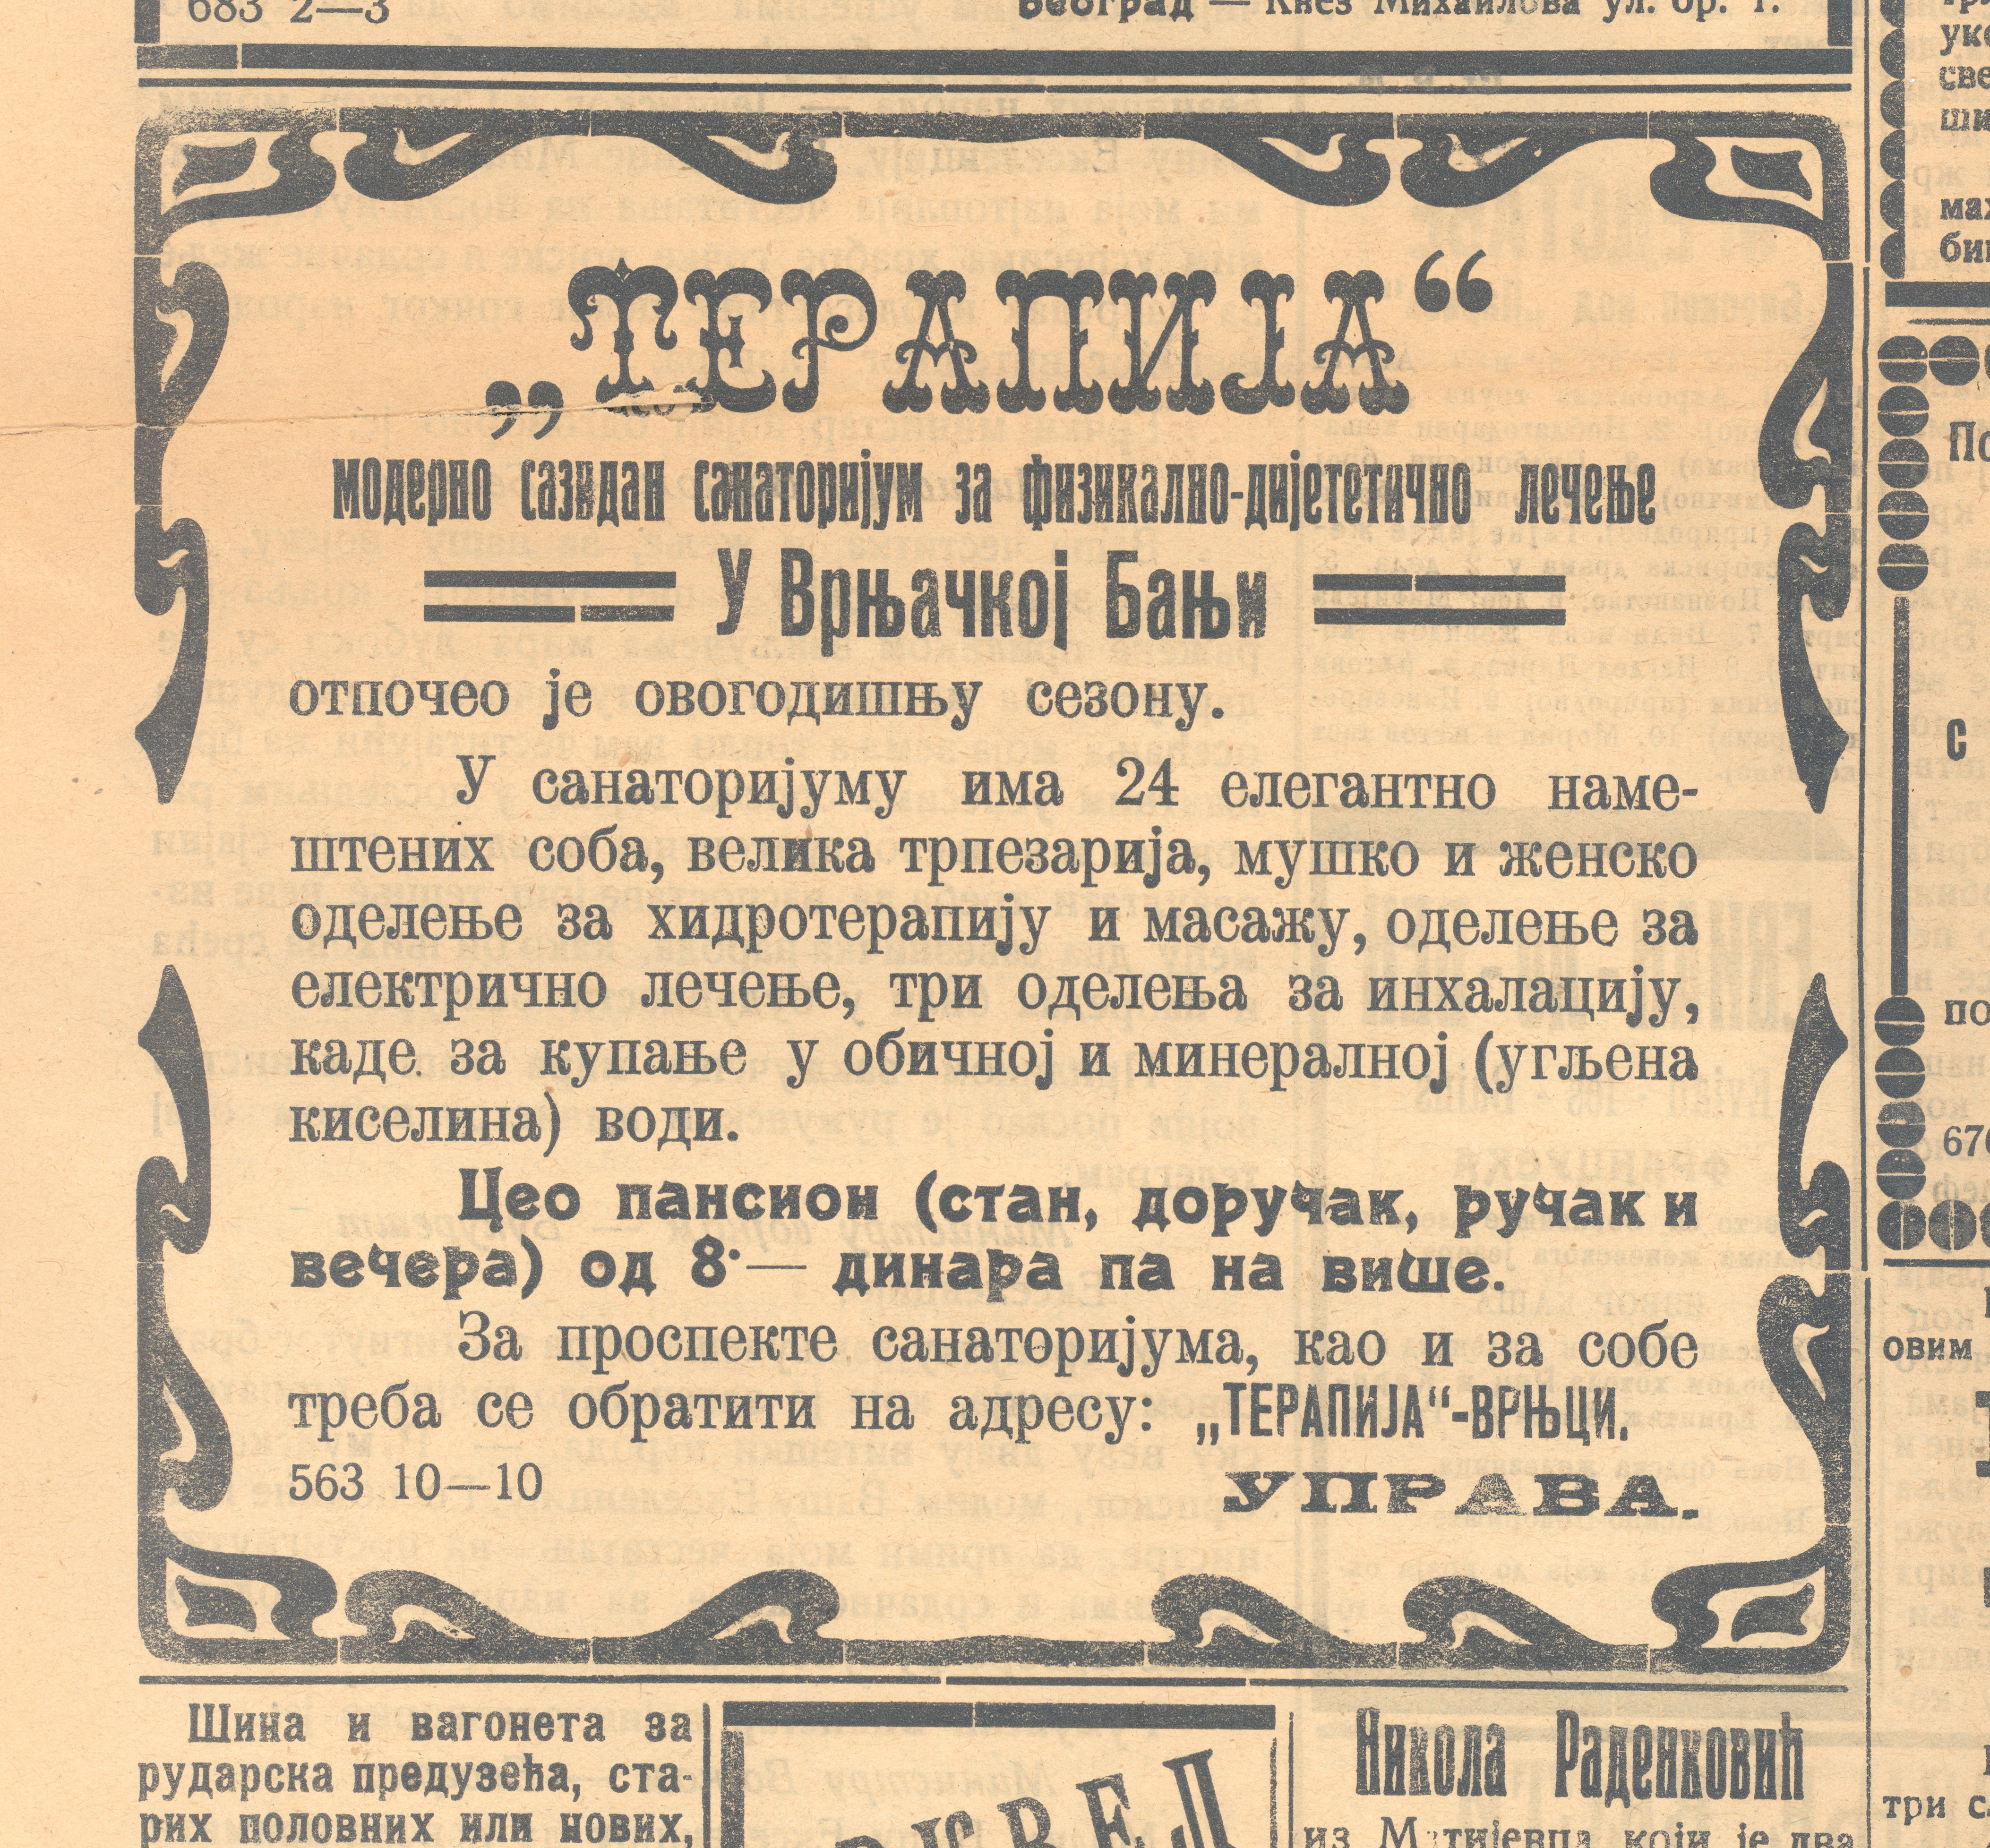 Terapija Pravda 5.avg.1913.